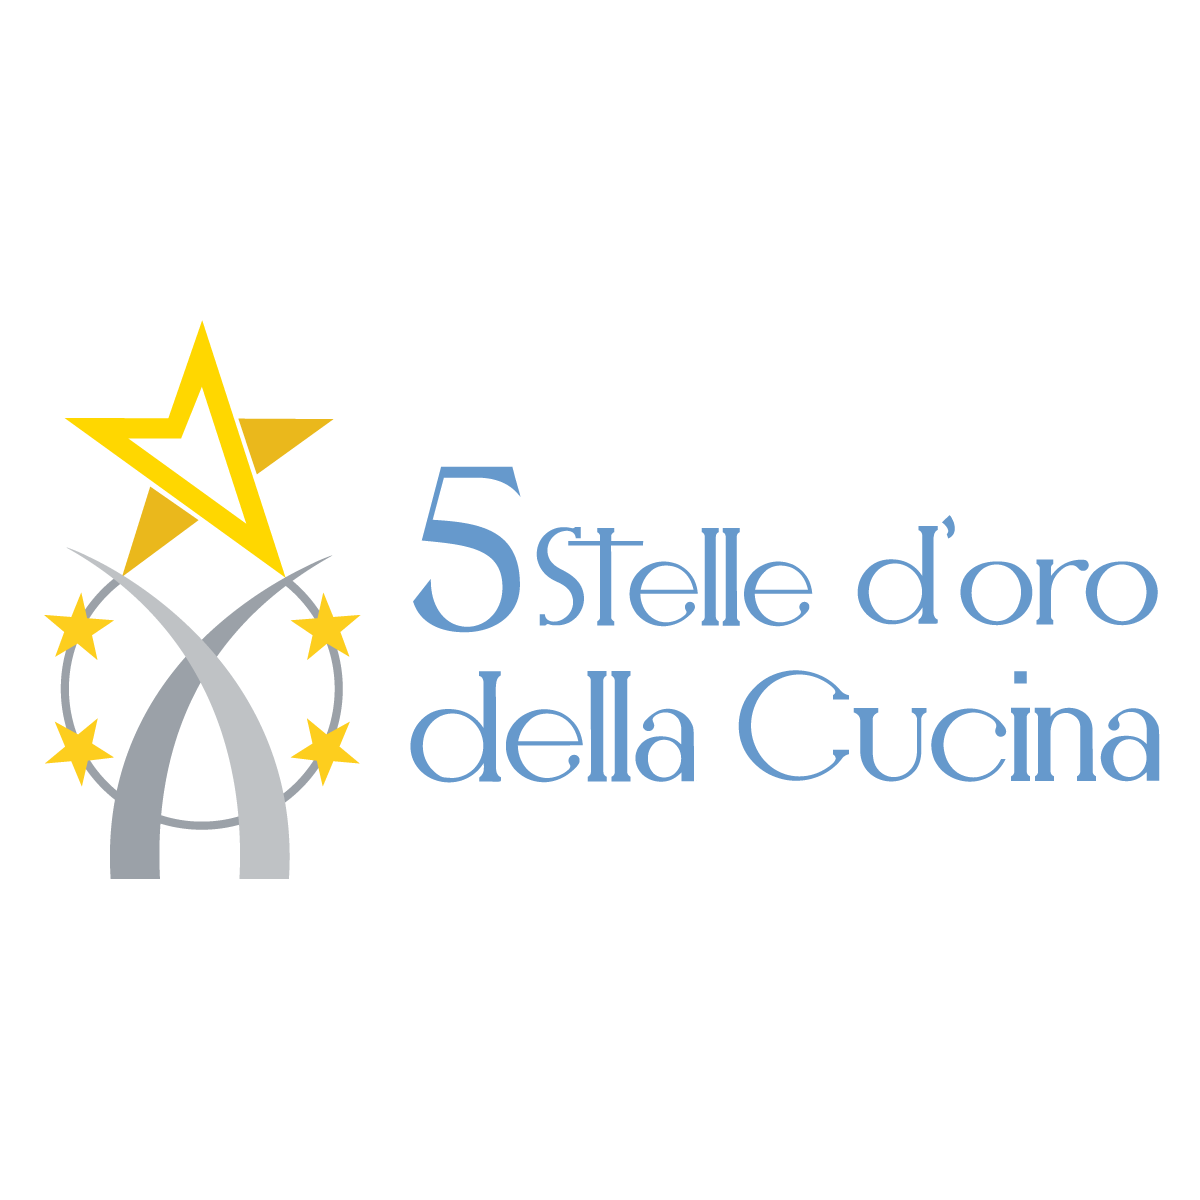 Premio-5-stelle-d-oro-della-cucina-ass-cuochi-italia-Associazione-italiana-cuochi